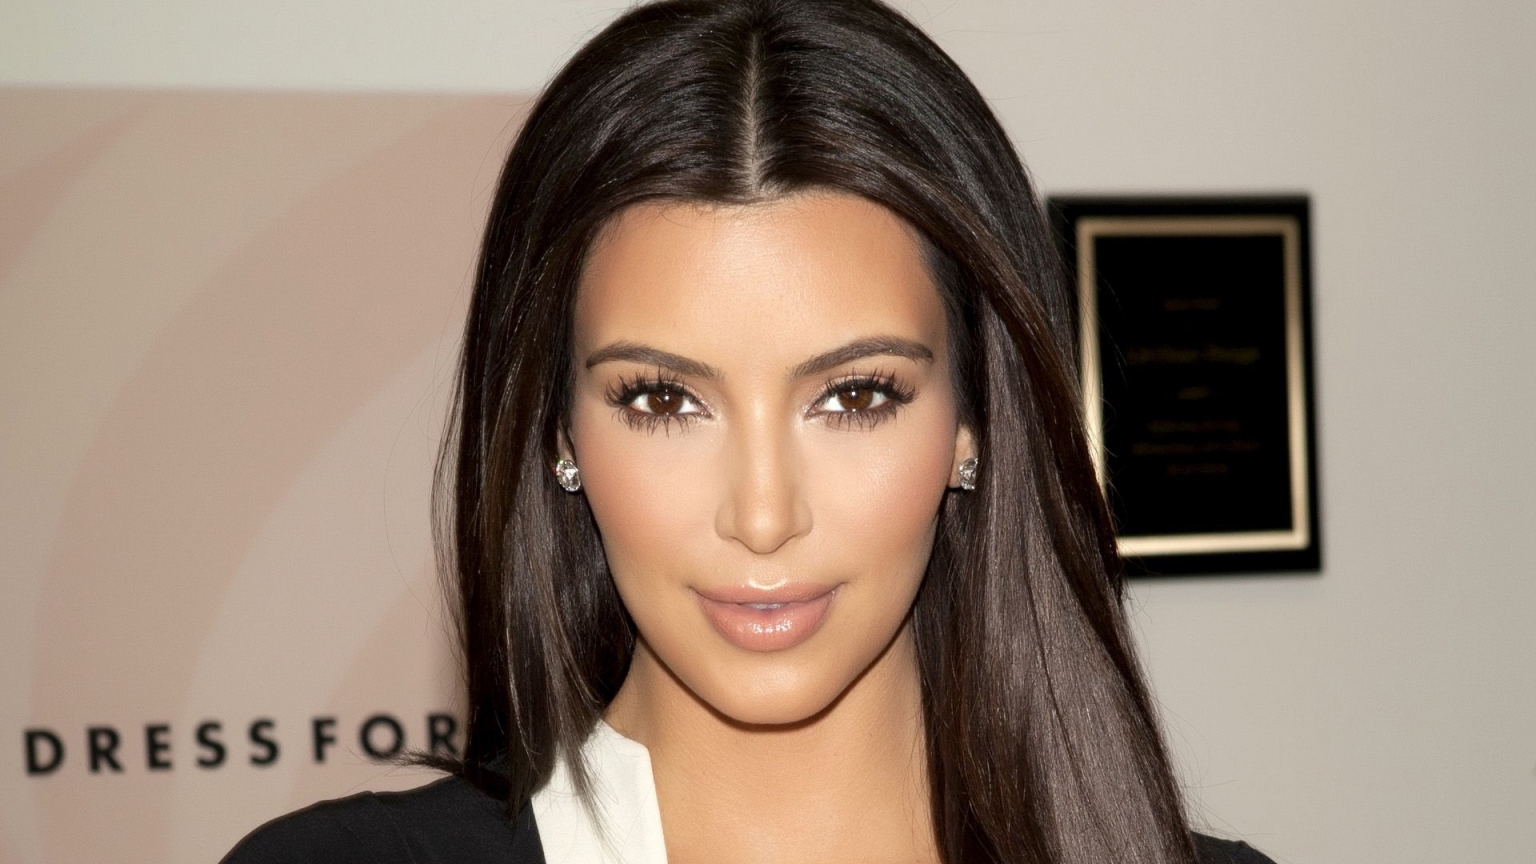 Gorgeous Kim Kardashian for 1536 x 864 HDTV resolution